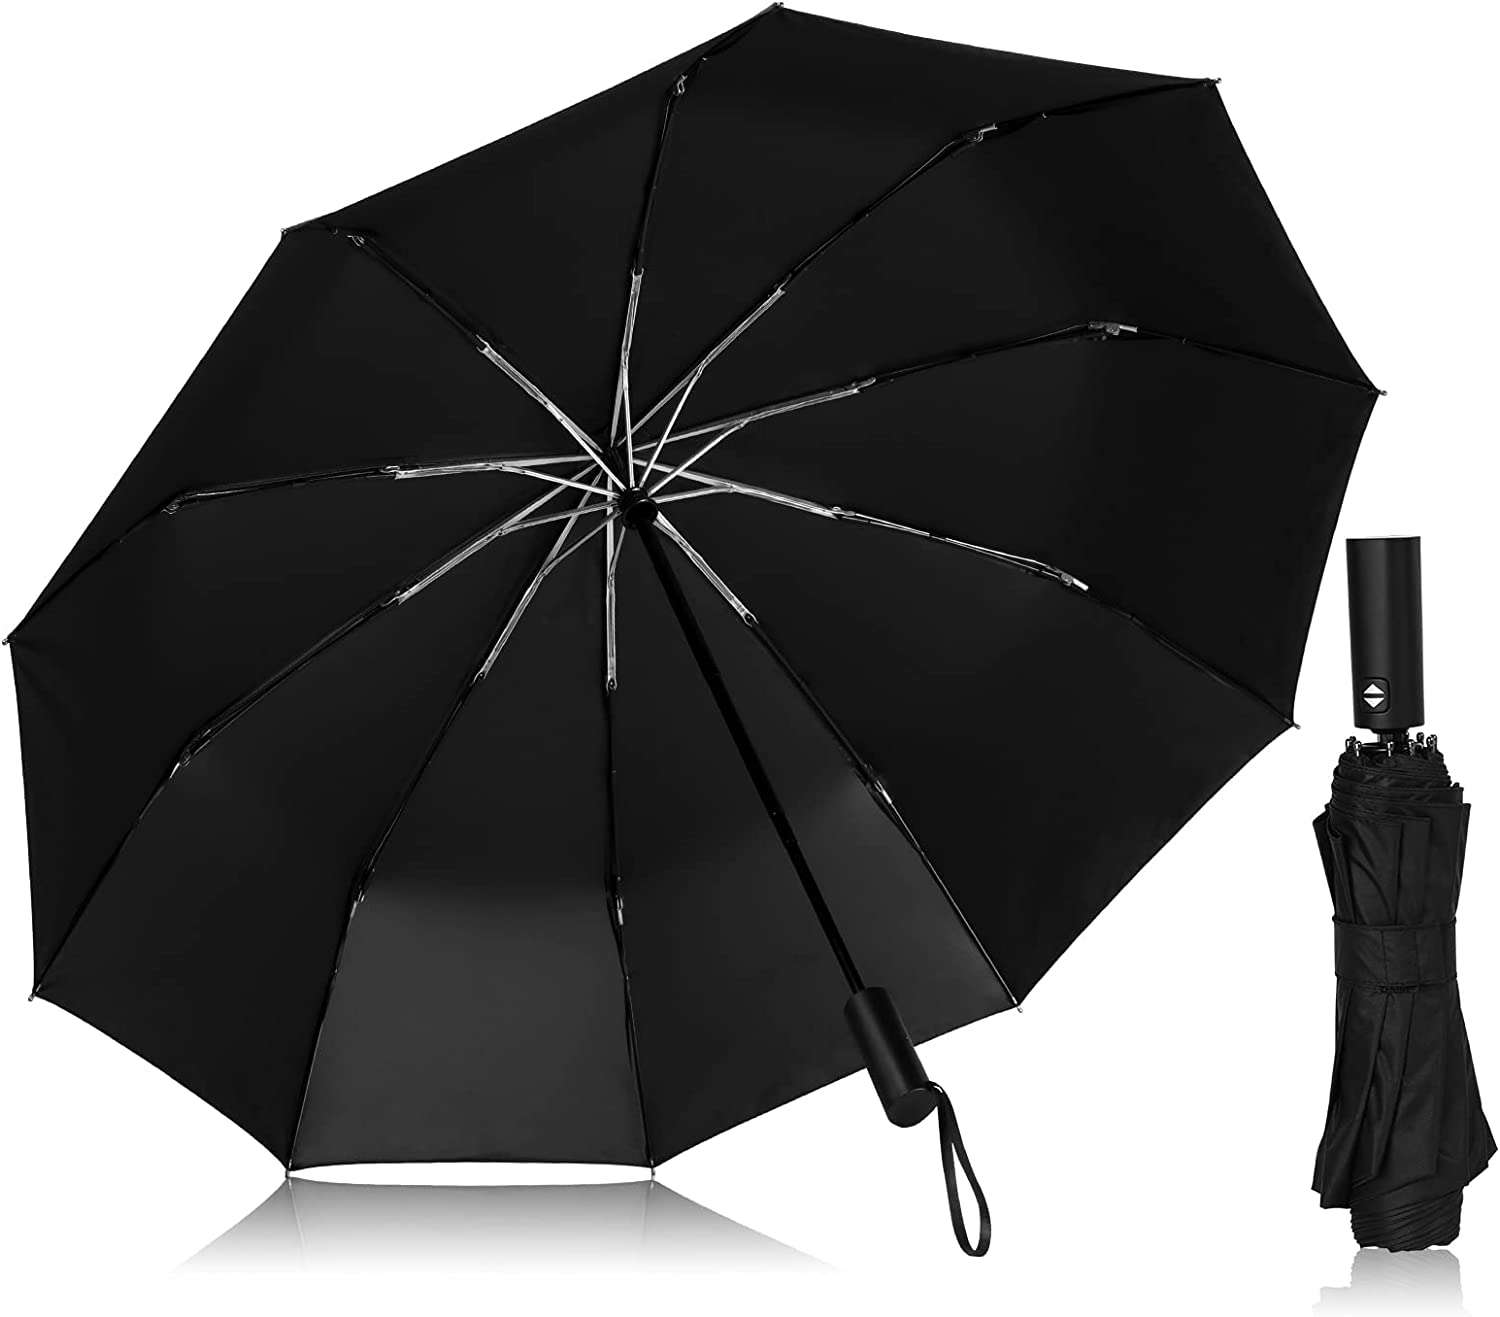 【晴雨兼用】折りたたみ傘が【最大44%OFF】万が一の時のアイテムも「Amazonタイムセール」でゲット♪ 61eOk+Pmu1L._AC_UL1500_.jpg